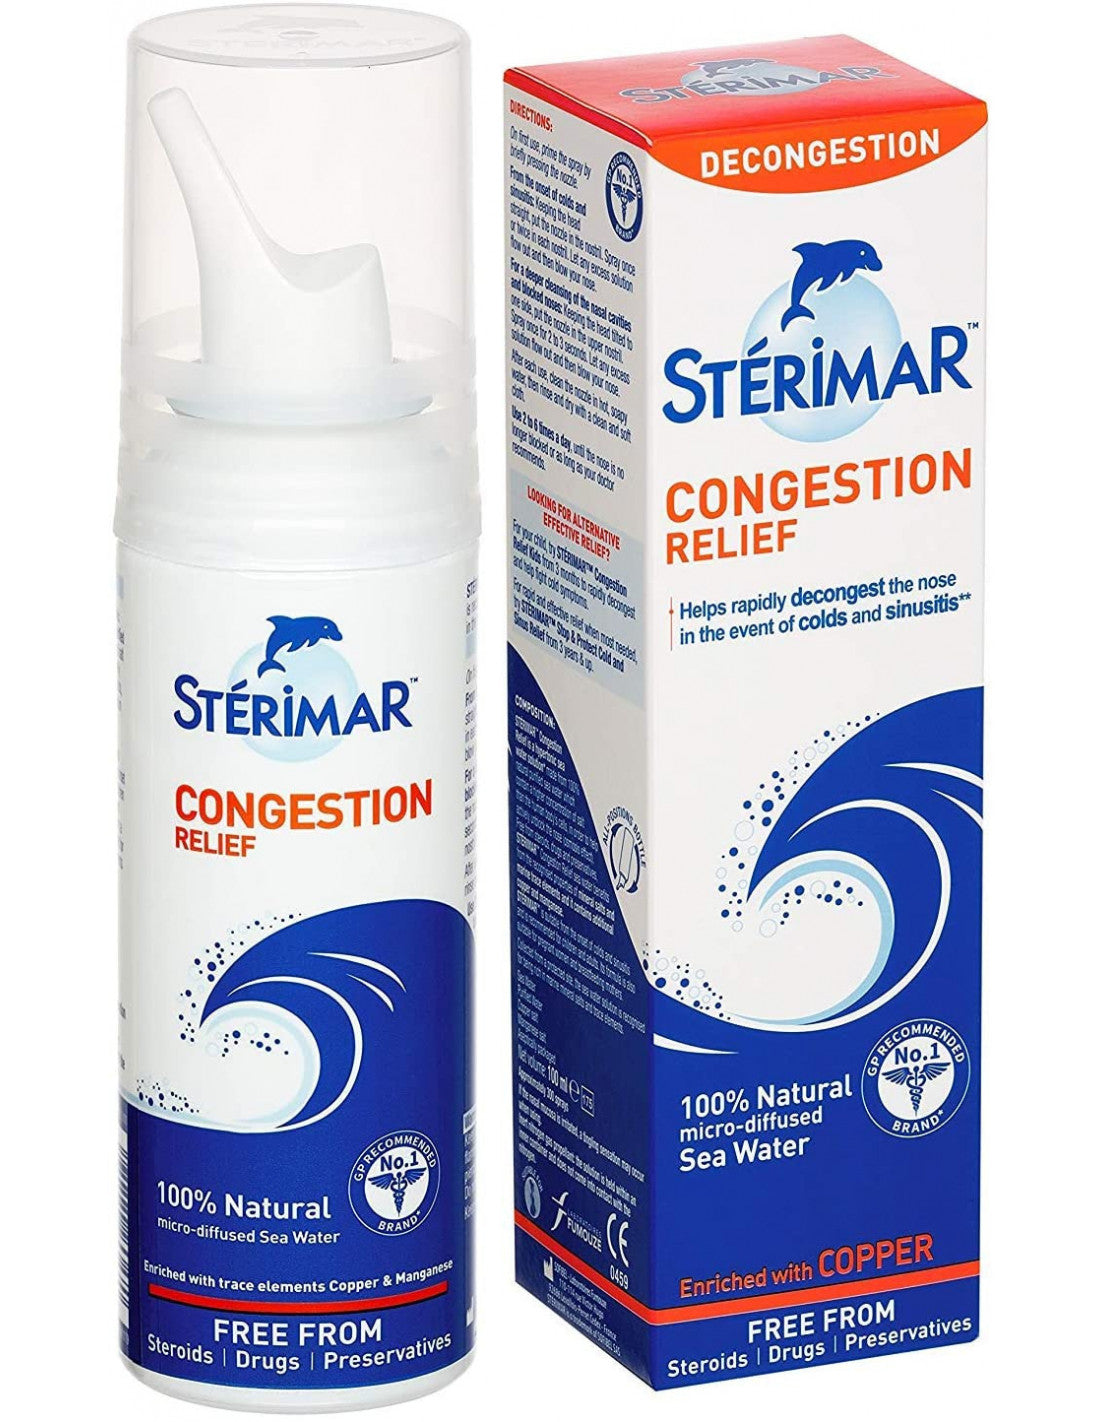 Sterimar Solution Nasal Cleaning Of Seawater, PharmacyClub